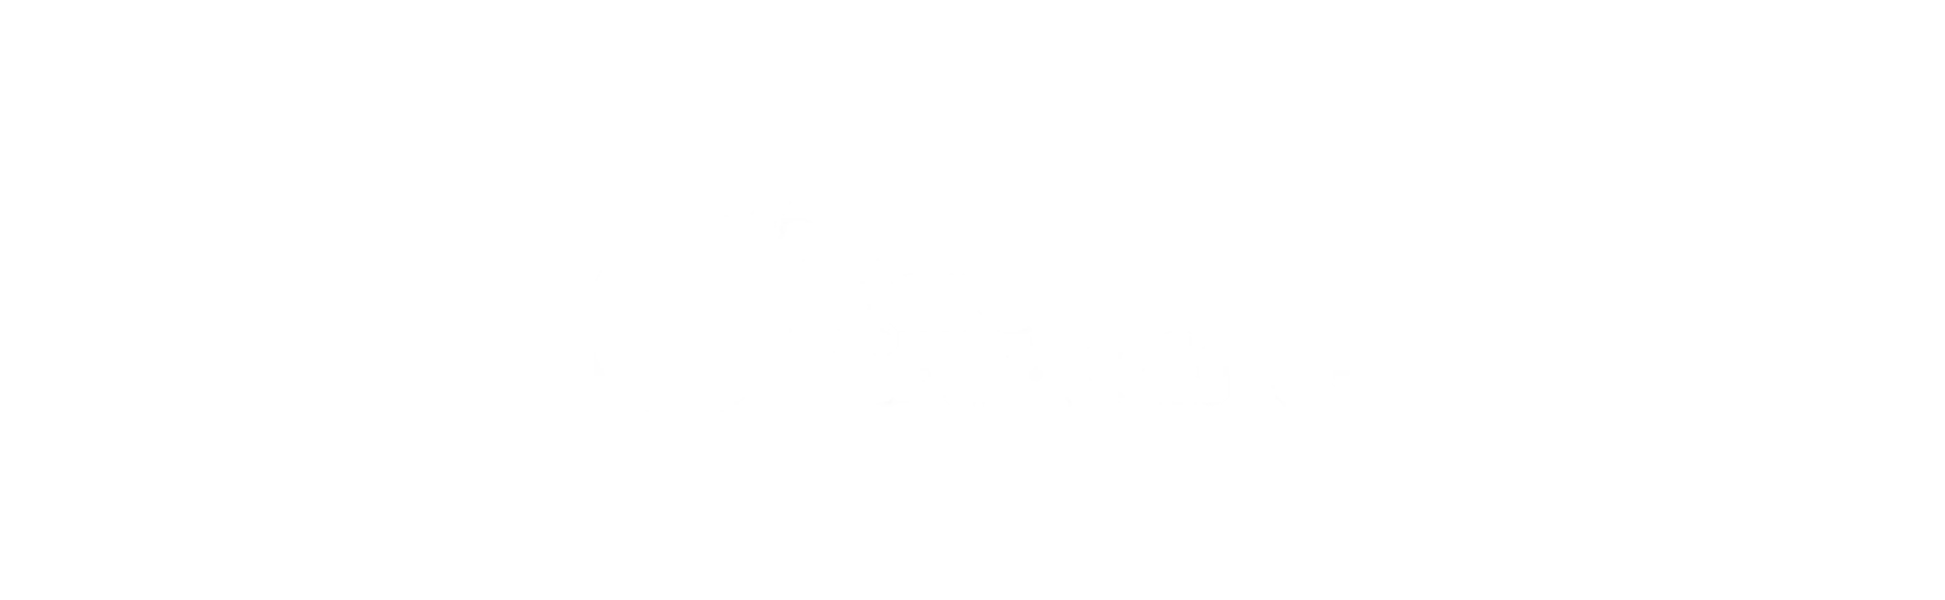 Bare Conductive logo white